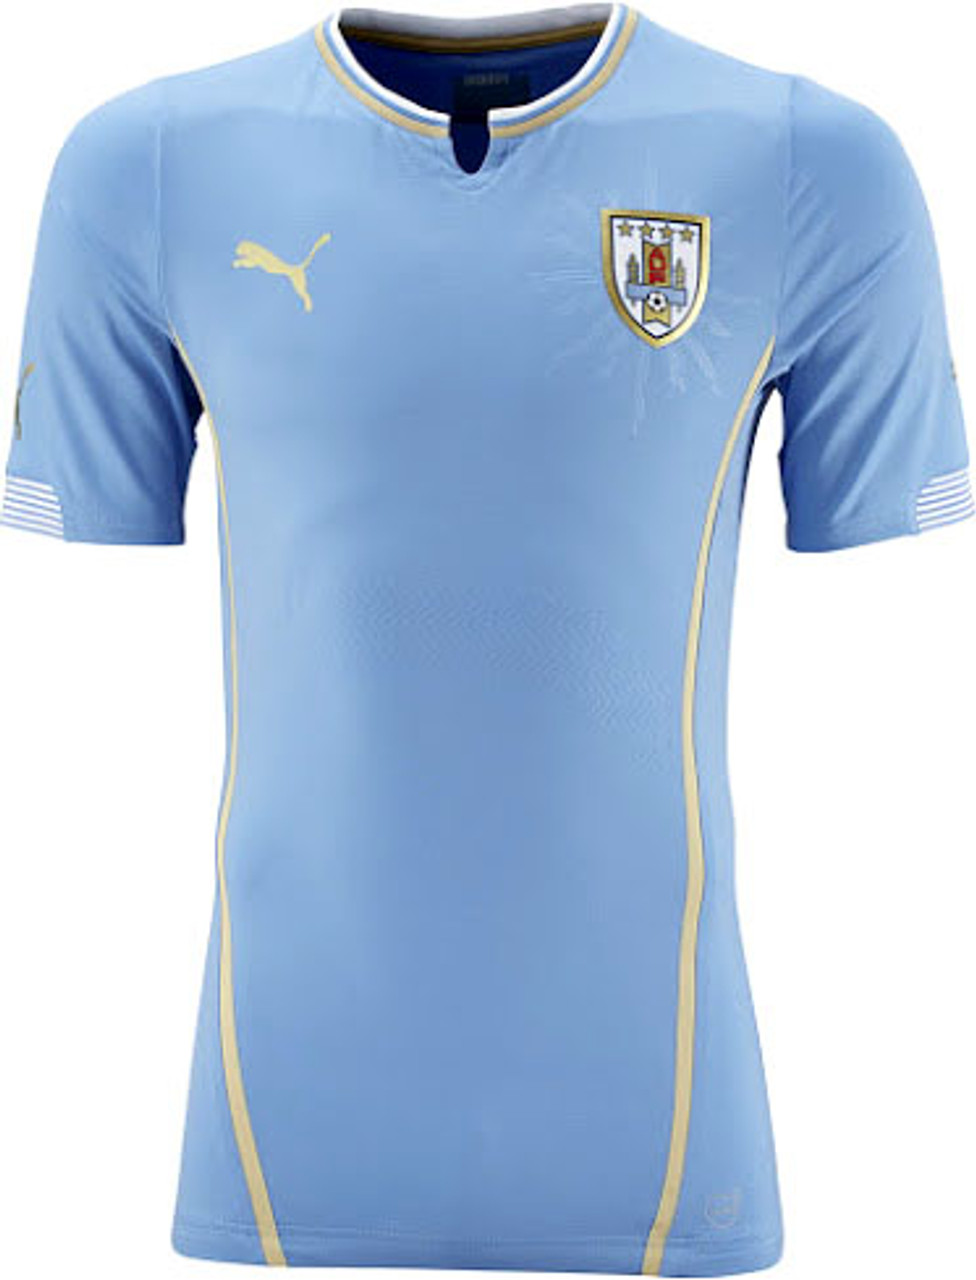 uruguay soccer uniform